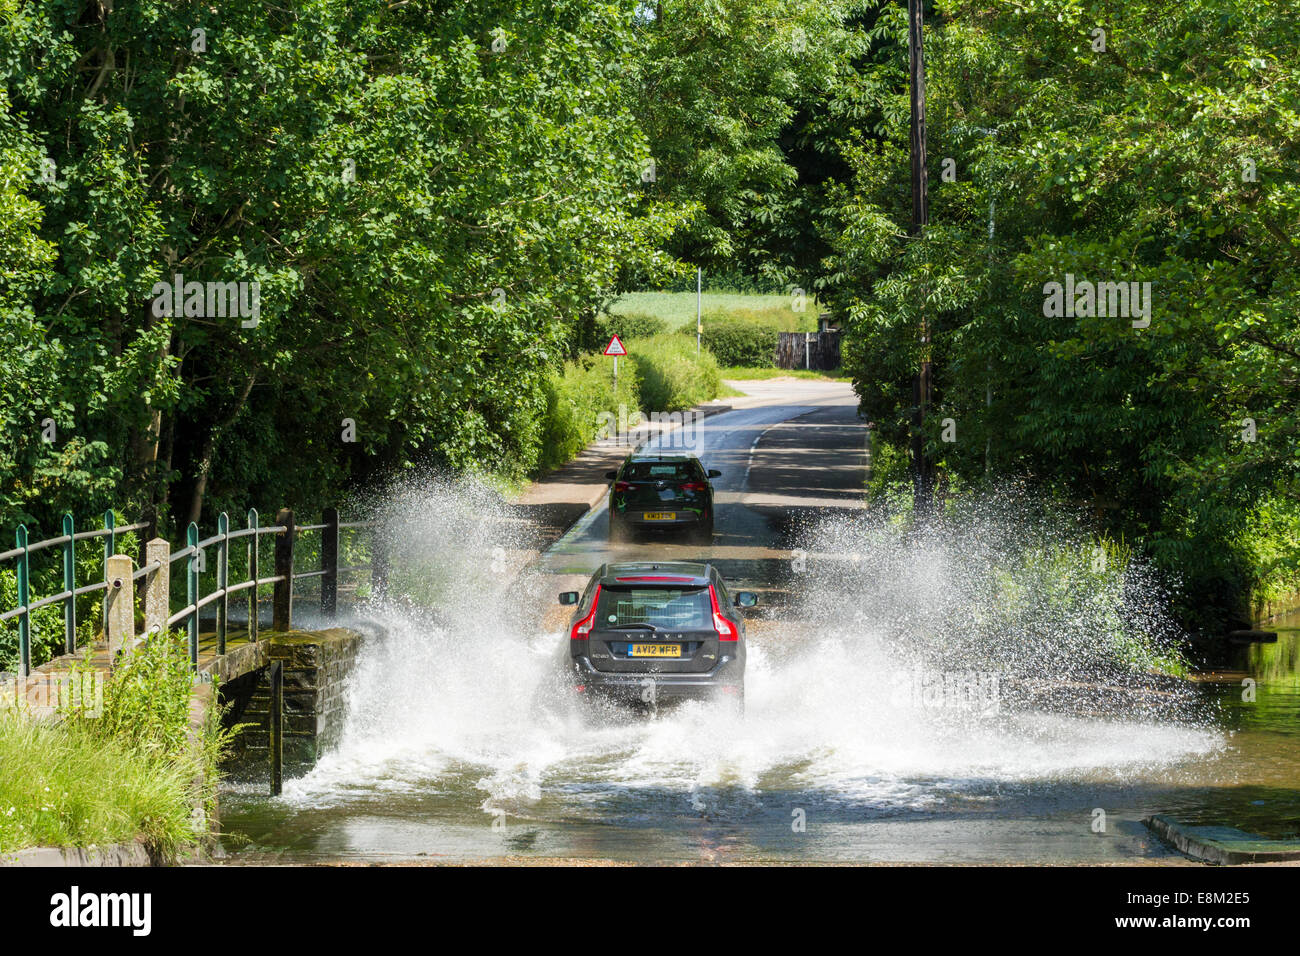 La conduite du véhicule par un ruisseau. Une voiture aux projections d'eau lorsque entraîné par la Ford de traverser la route à Rufford, Dorset, England, UK Banque D'Images